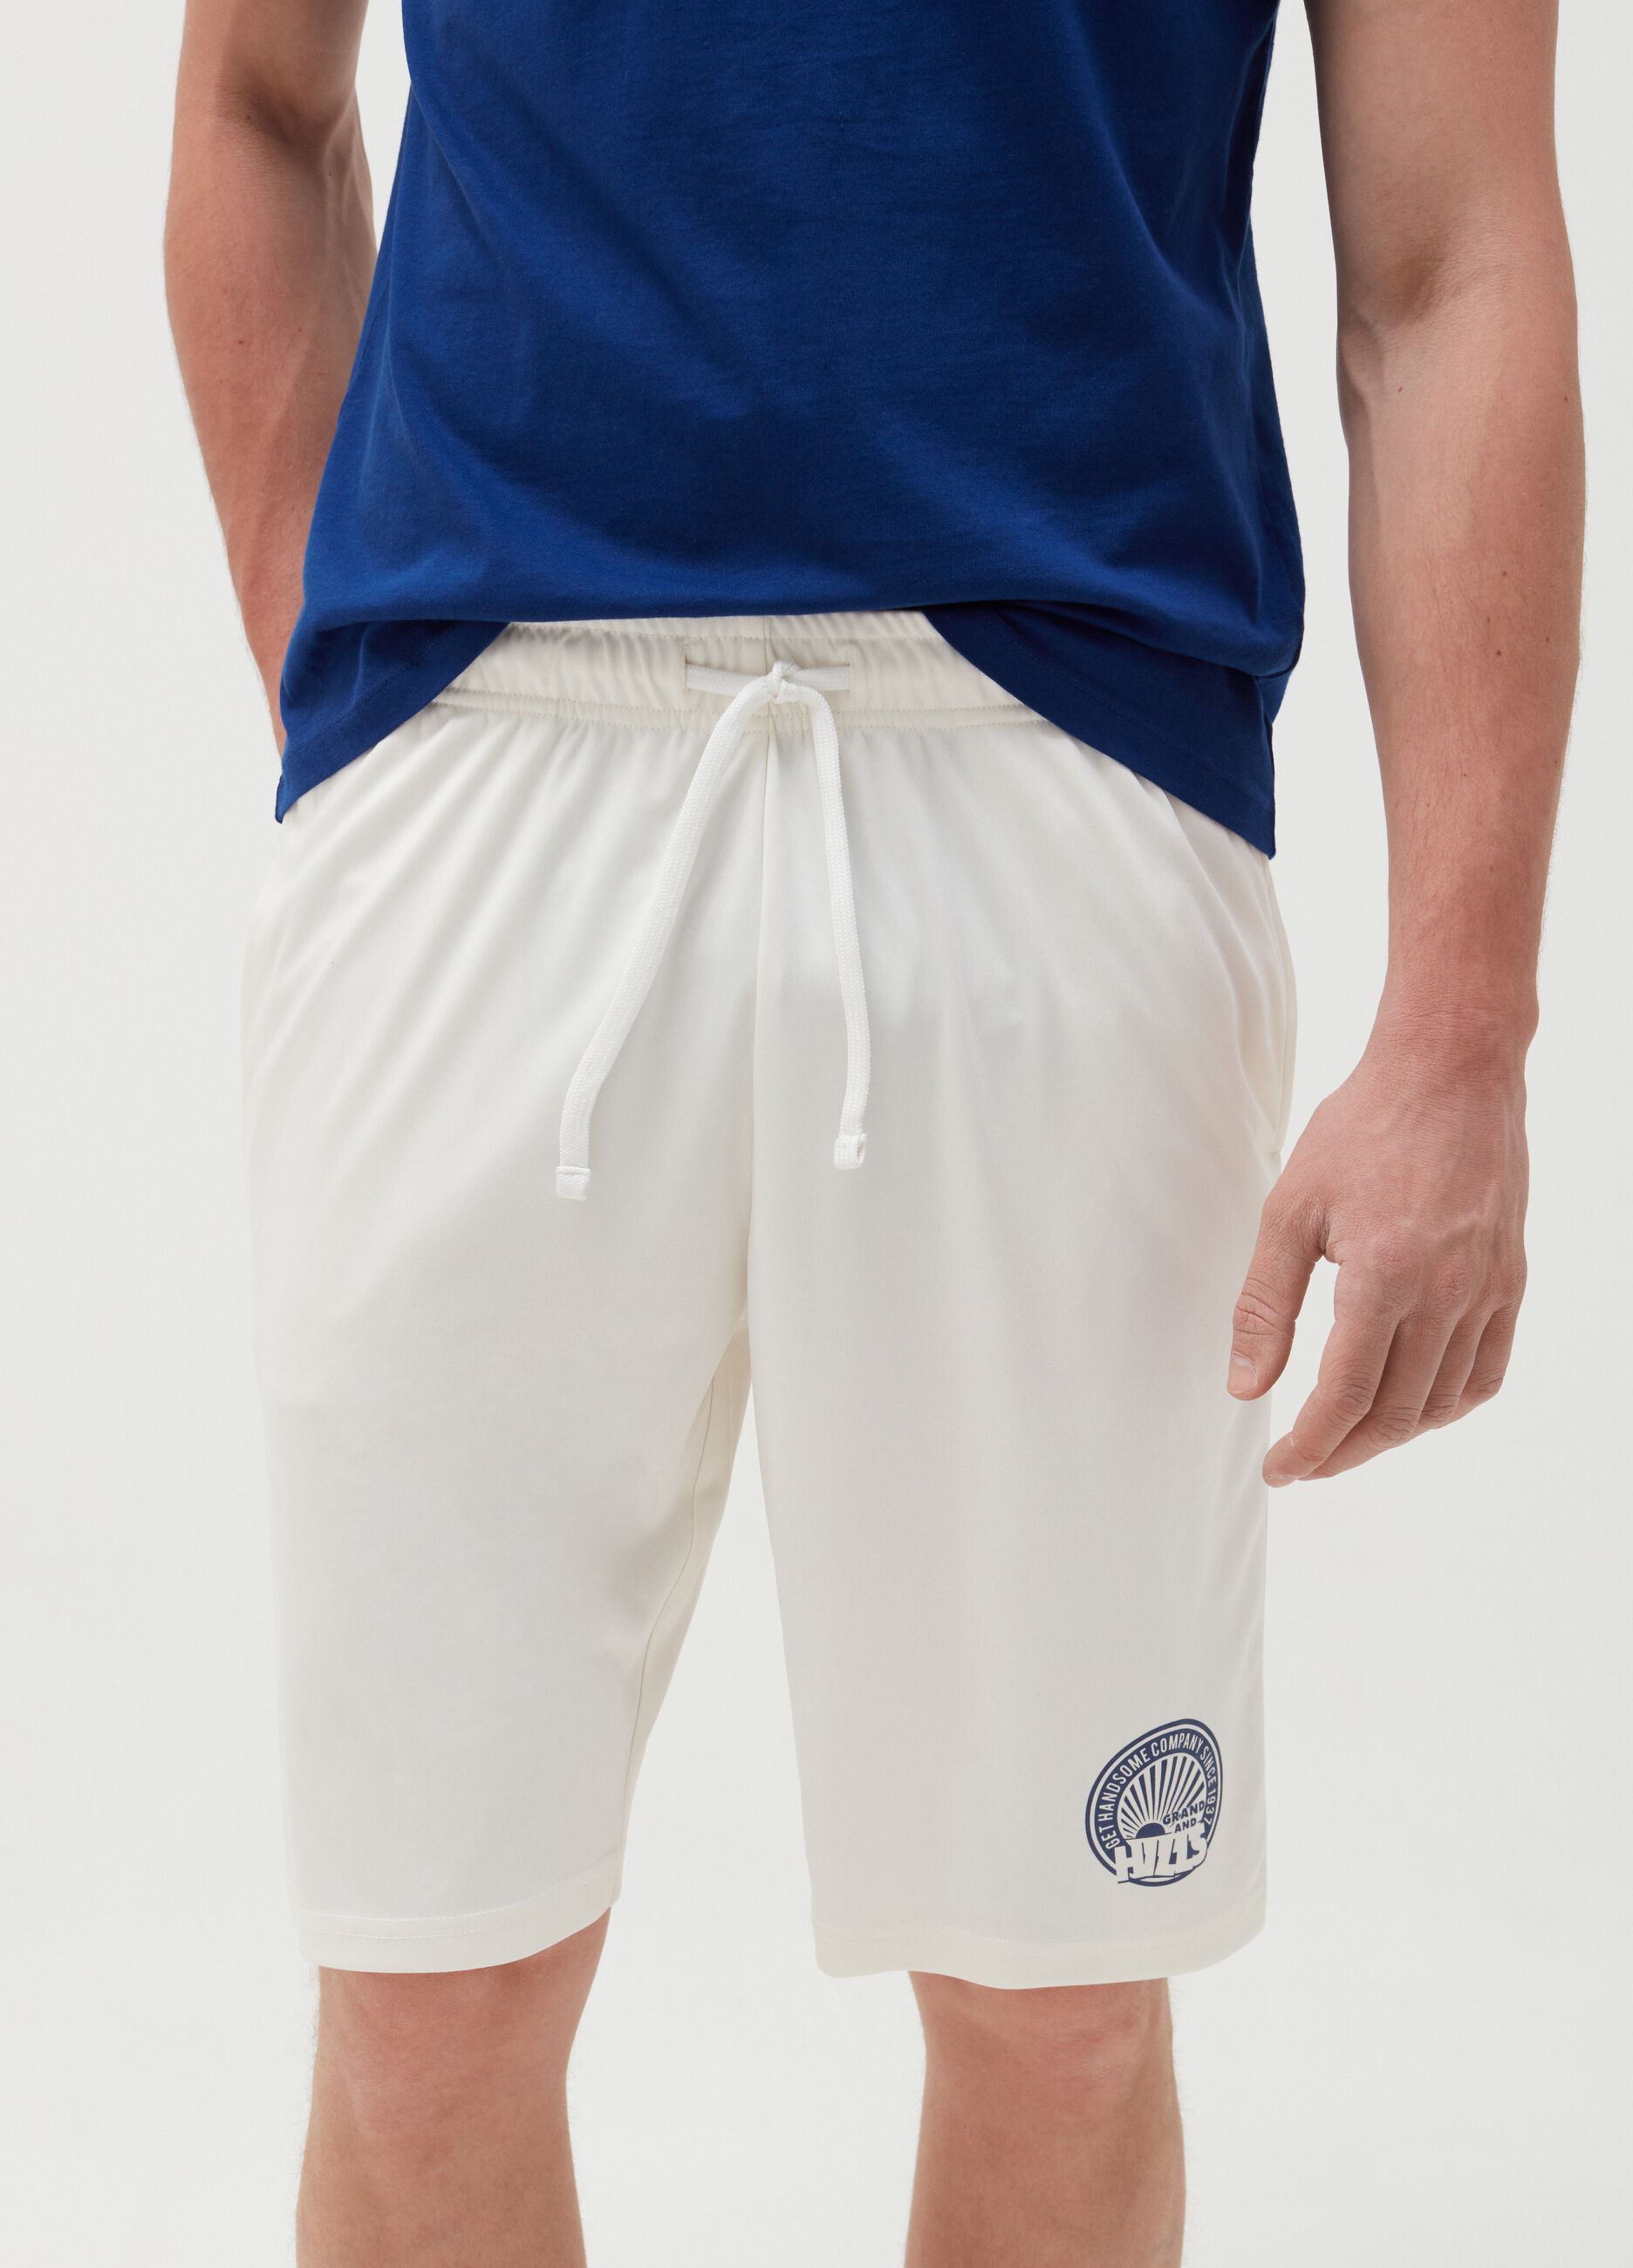 Bermuda shorts with drawstring and logo print